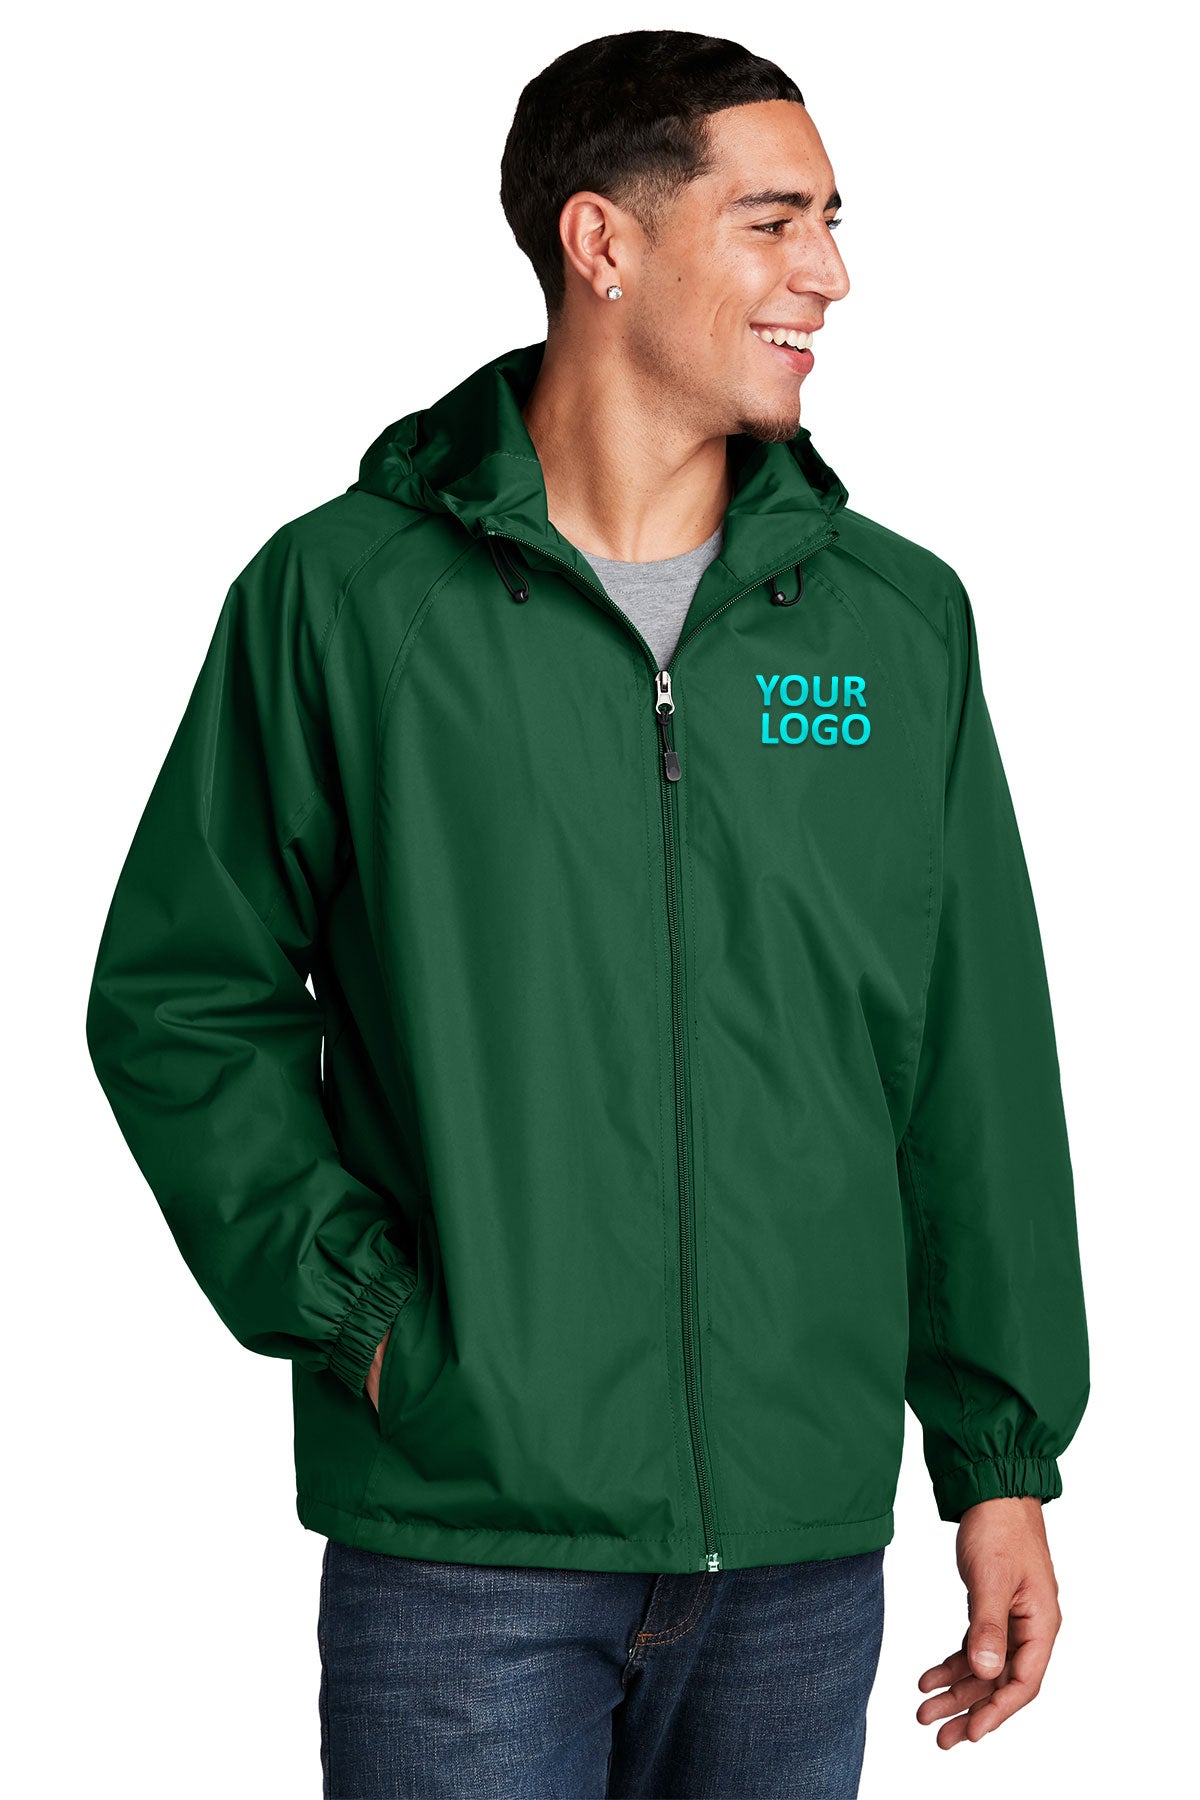 Sport-Tek Forest Green JST73 business logo jackets